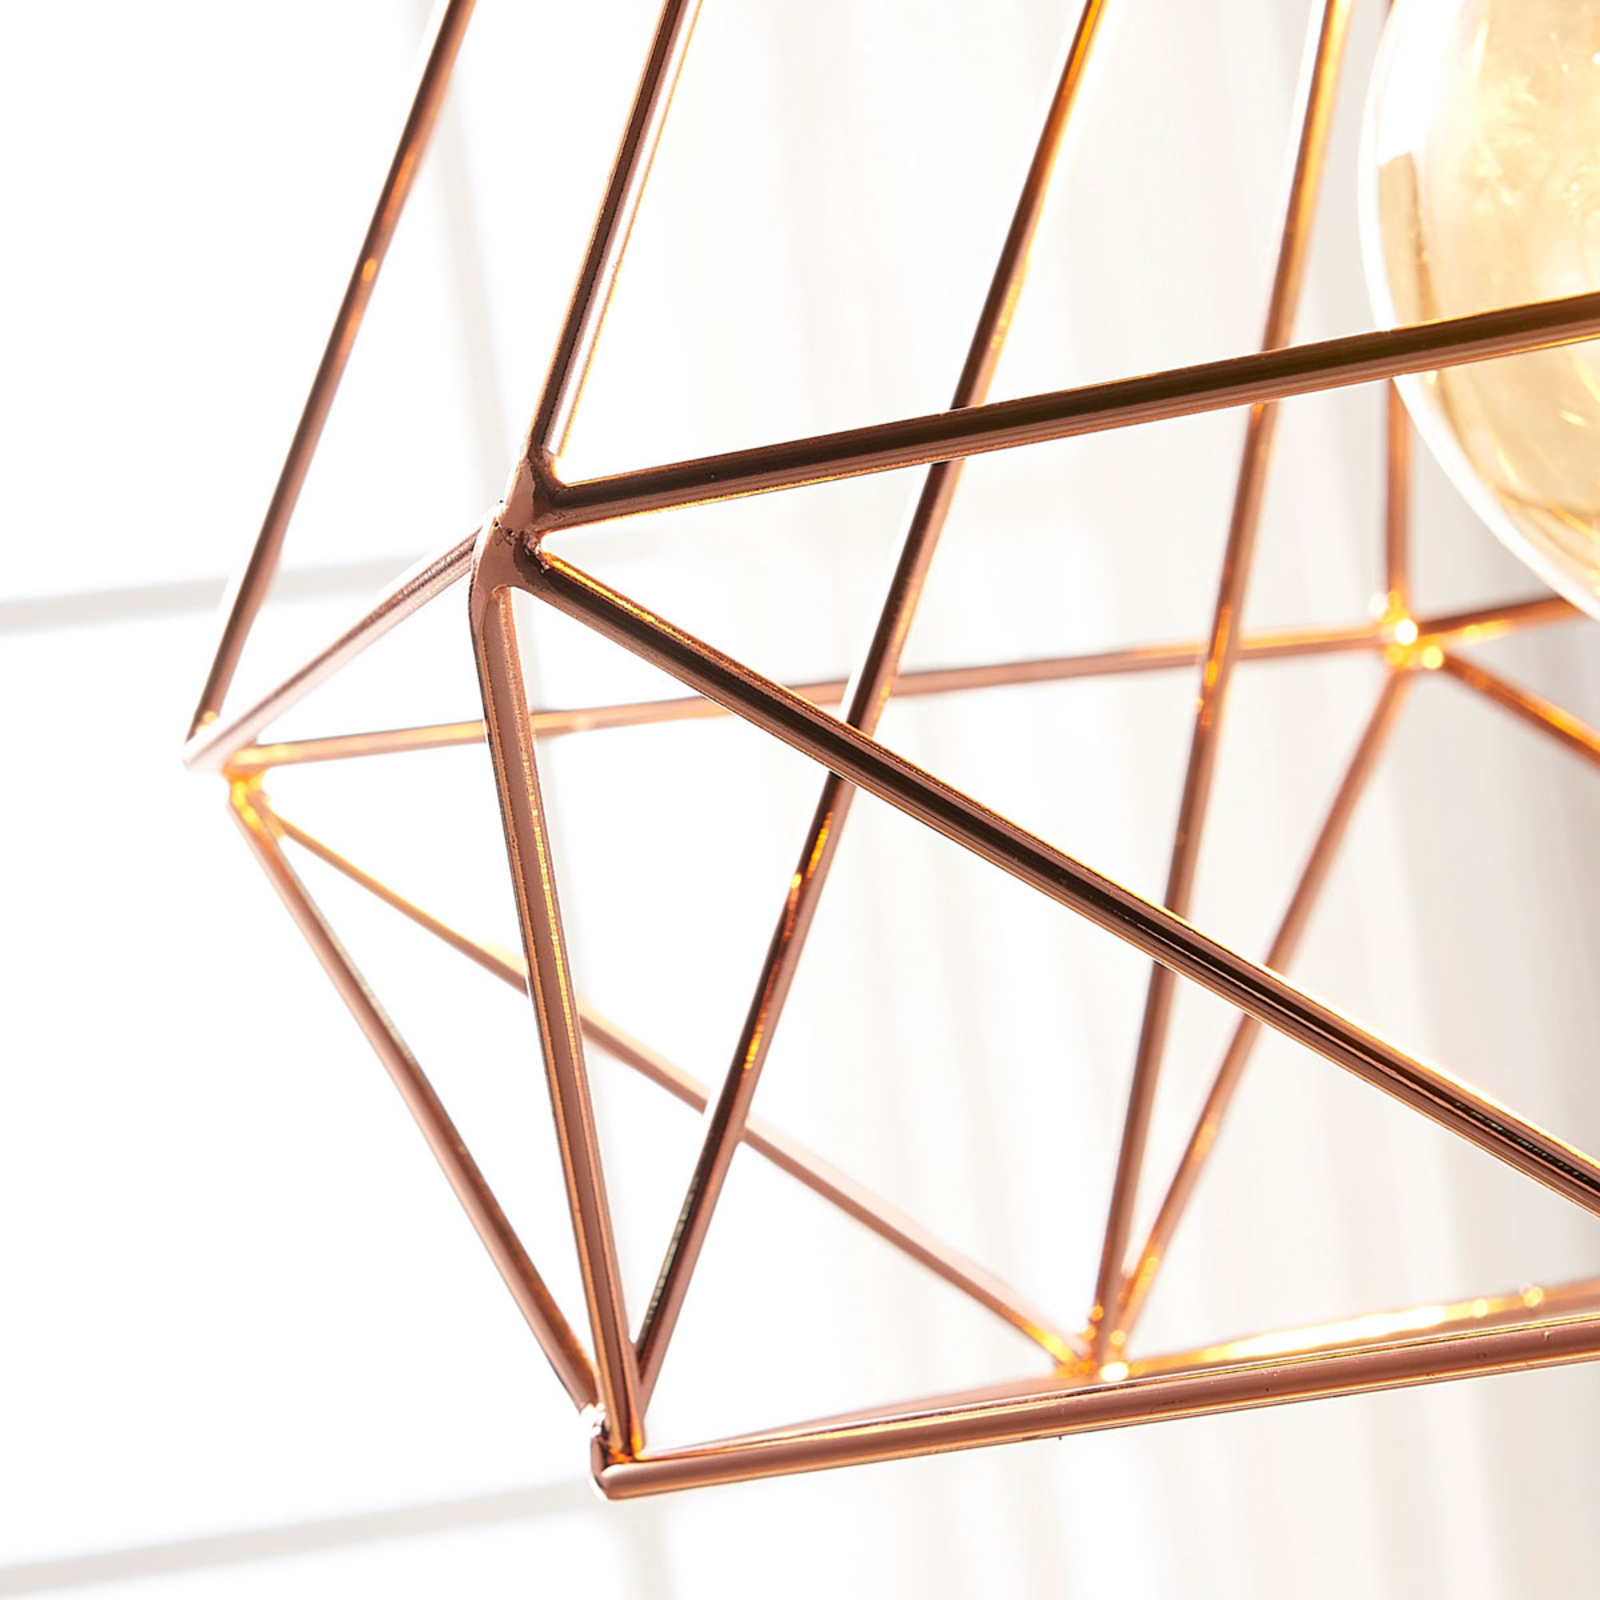 Copper-coloured cage pendant light Jossa